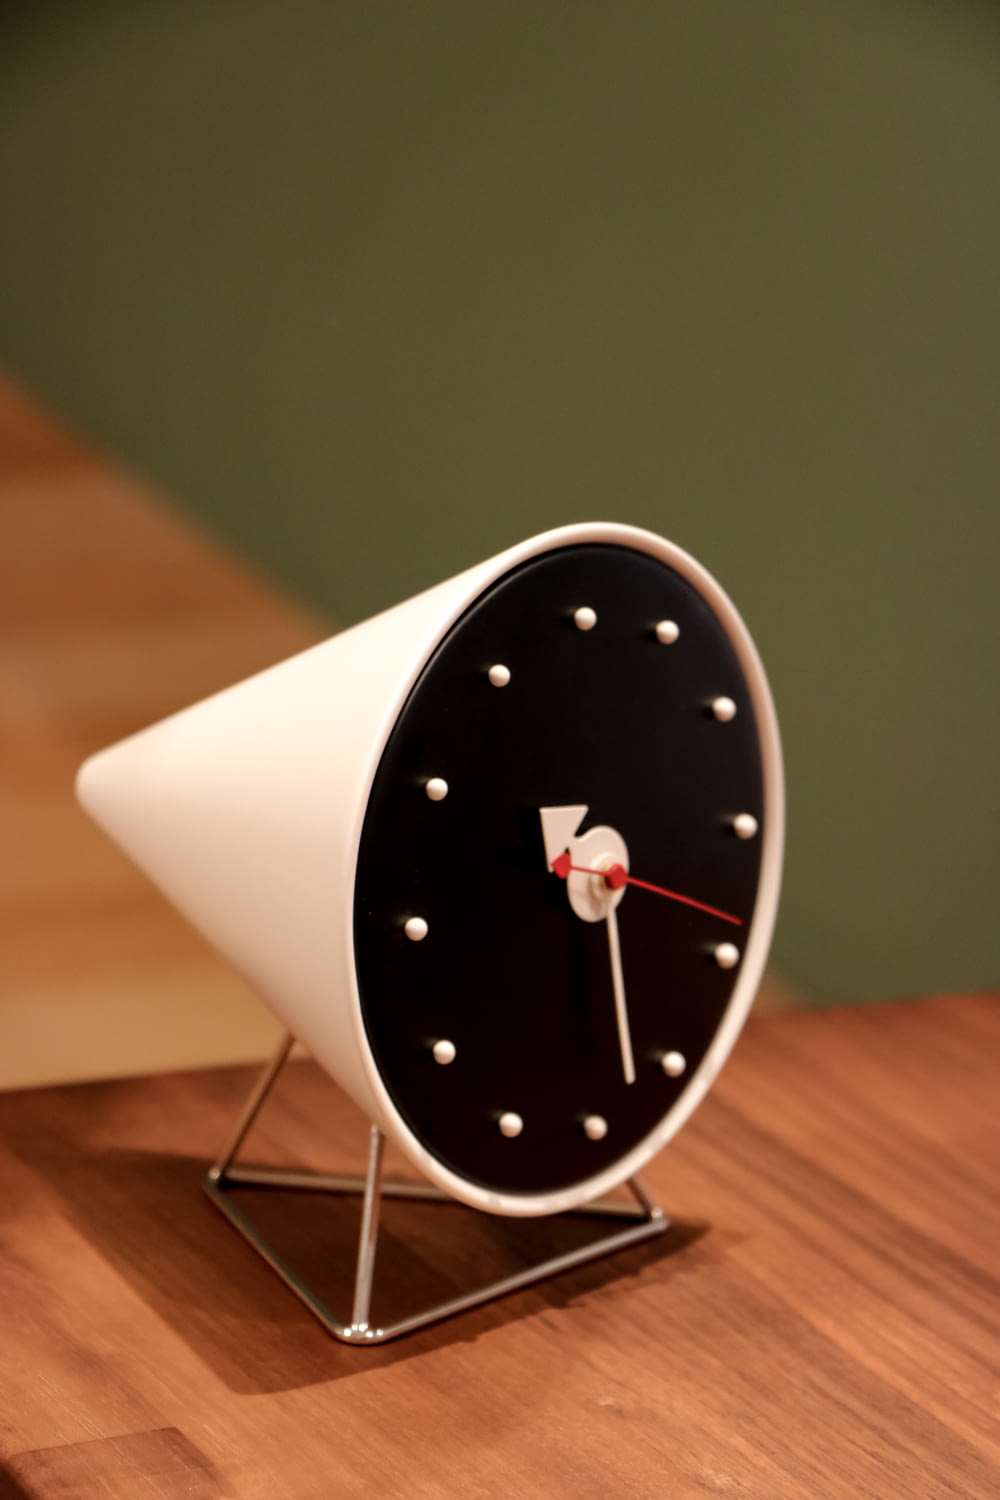 white and black round analog wall clock